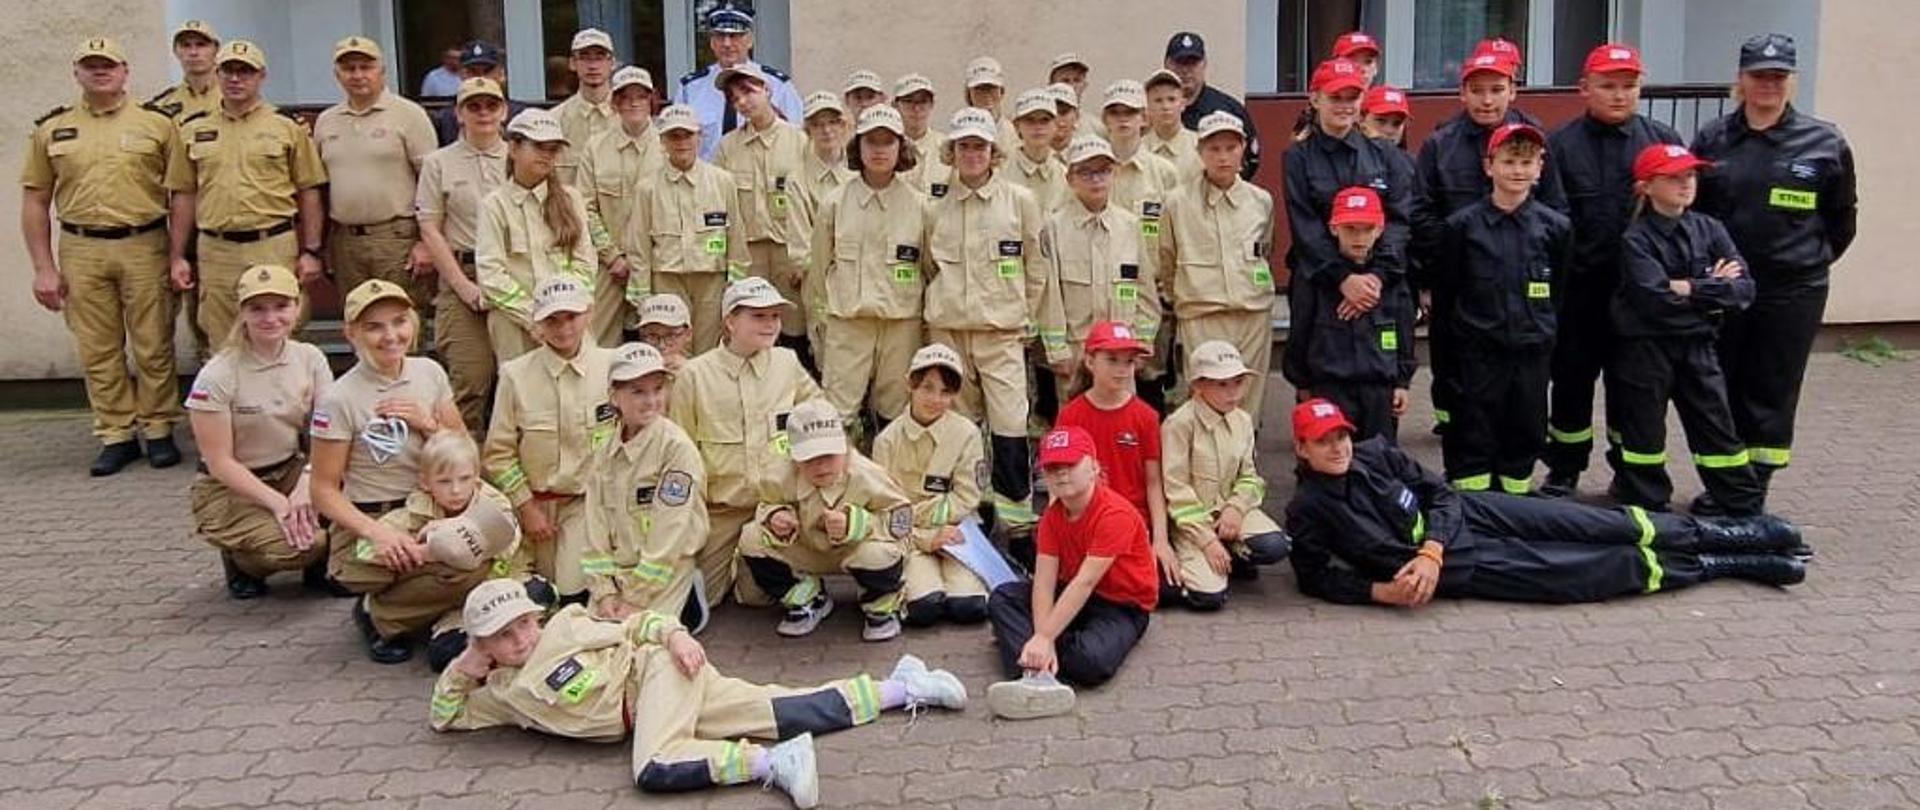 Obóz szkoleniowo-wypoczynkowy Młodzieżowych Drużyn Pożarniczych
Zdjęcie Grupowe uczestników obozu.
